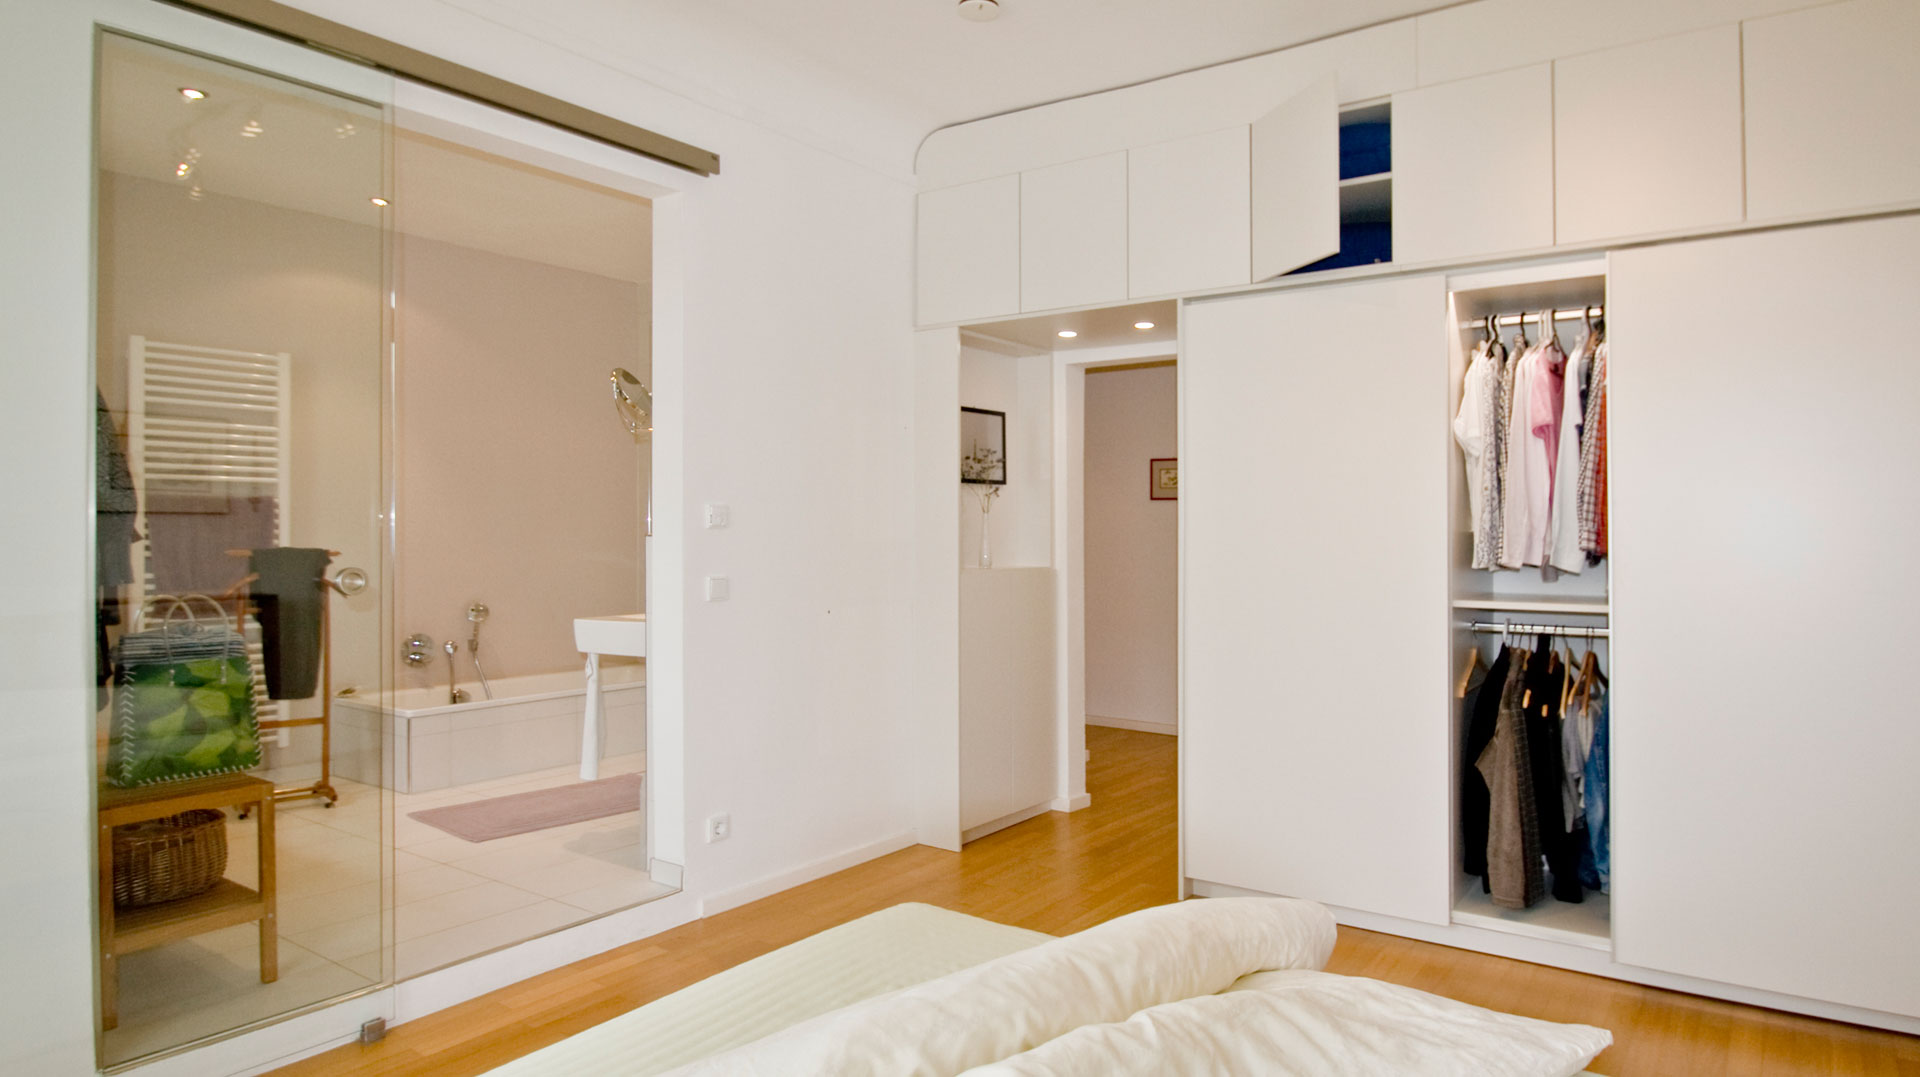 Individueller Kleiderschrank in einem Altbau-Schlafzimmer mit Bad ensuite